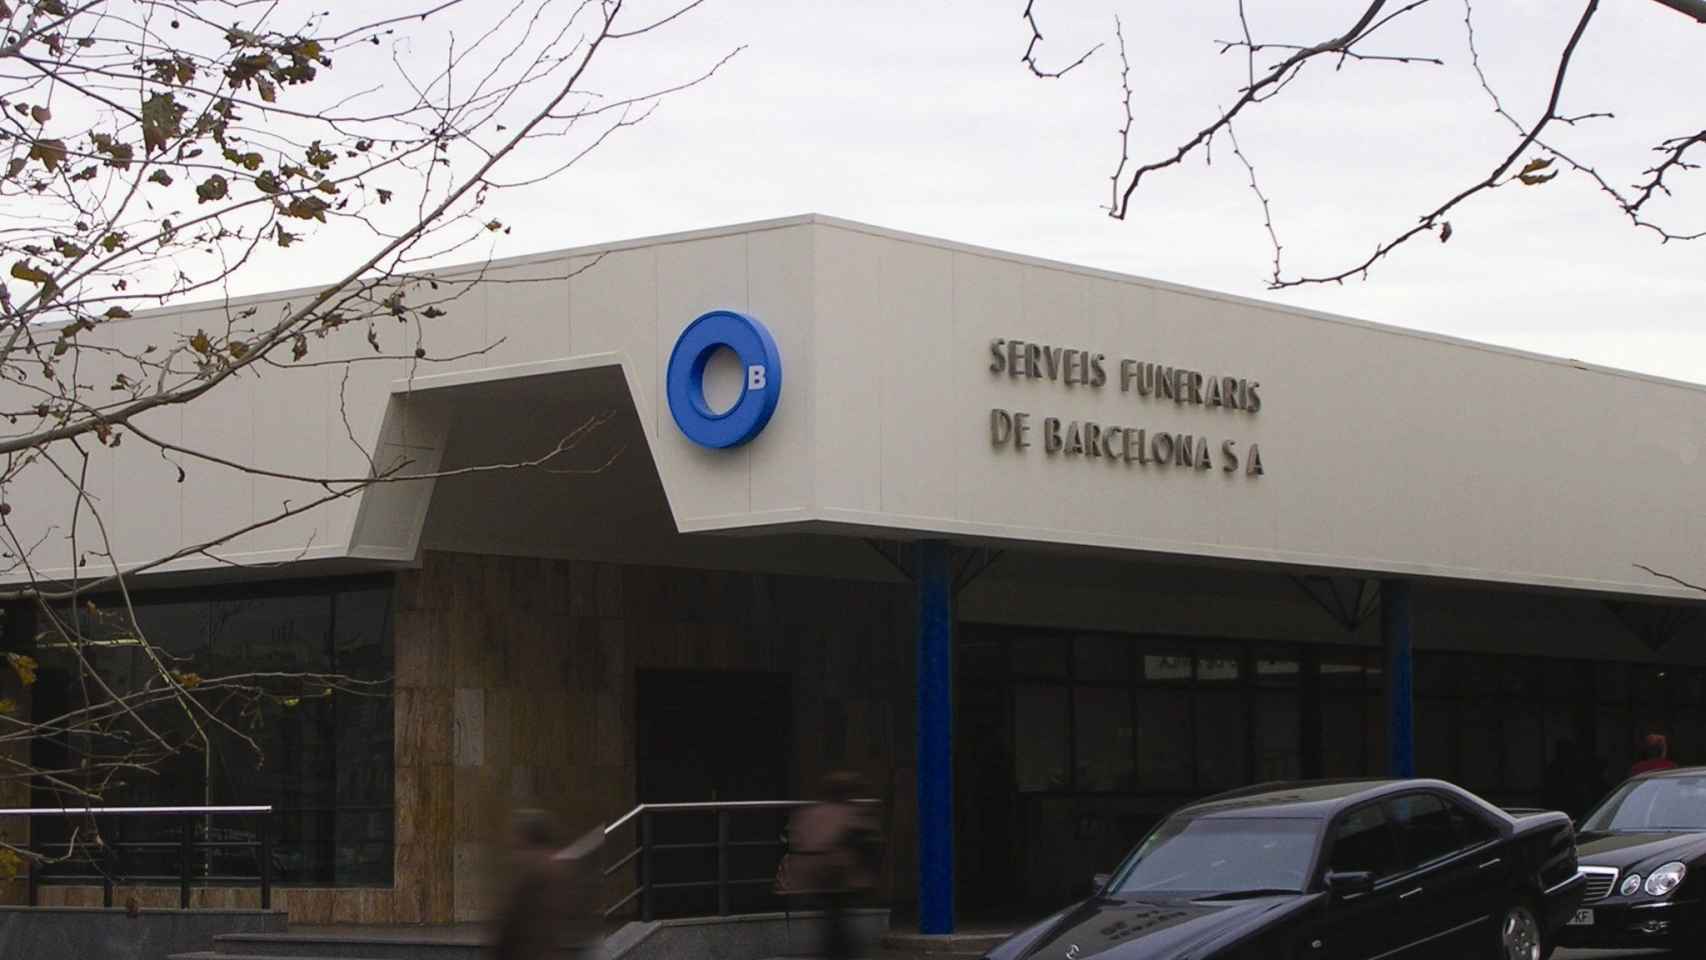 Exterior del edificio de Serveis Funeraris de Barcelona, con un coche fúnebre aparcado